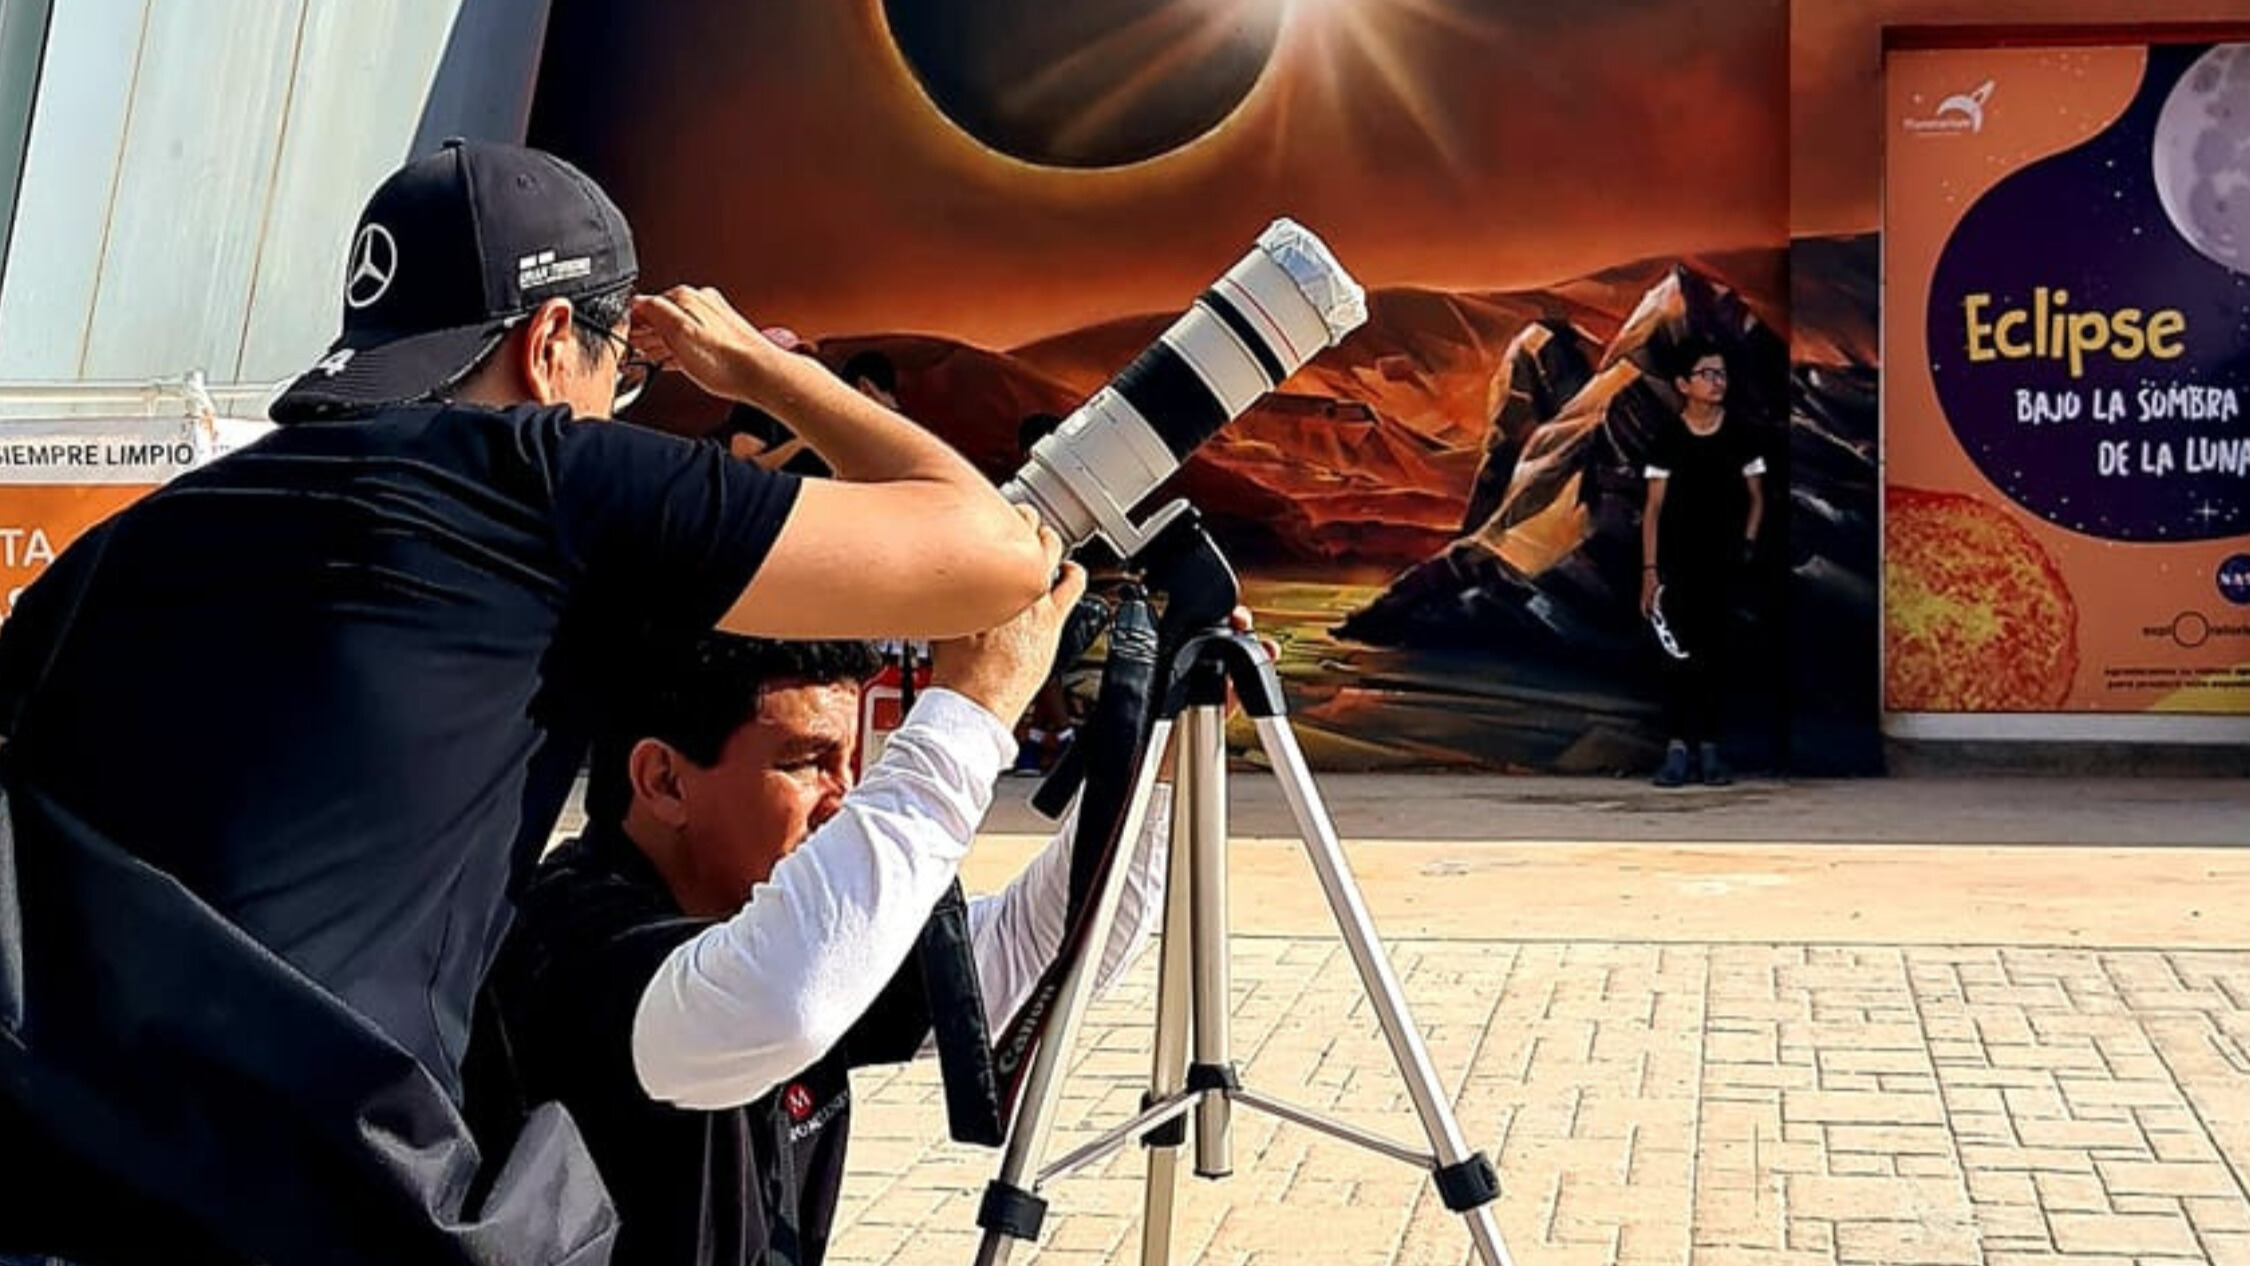 Llegó el 8 de abril y si no quieres perder detalle, aquí puedes ver el eclipse solar 2024 en vivo desde Torreón, con la transmisión oficial.